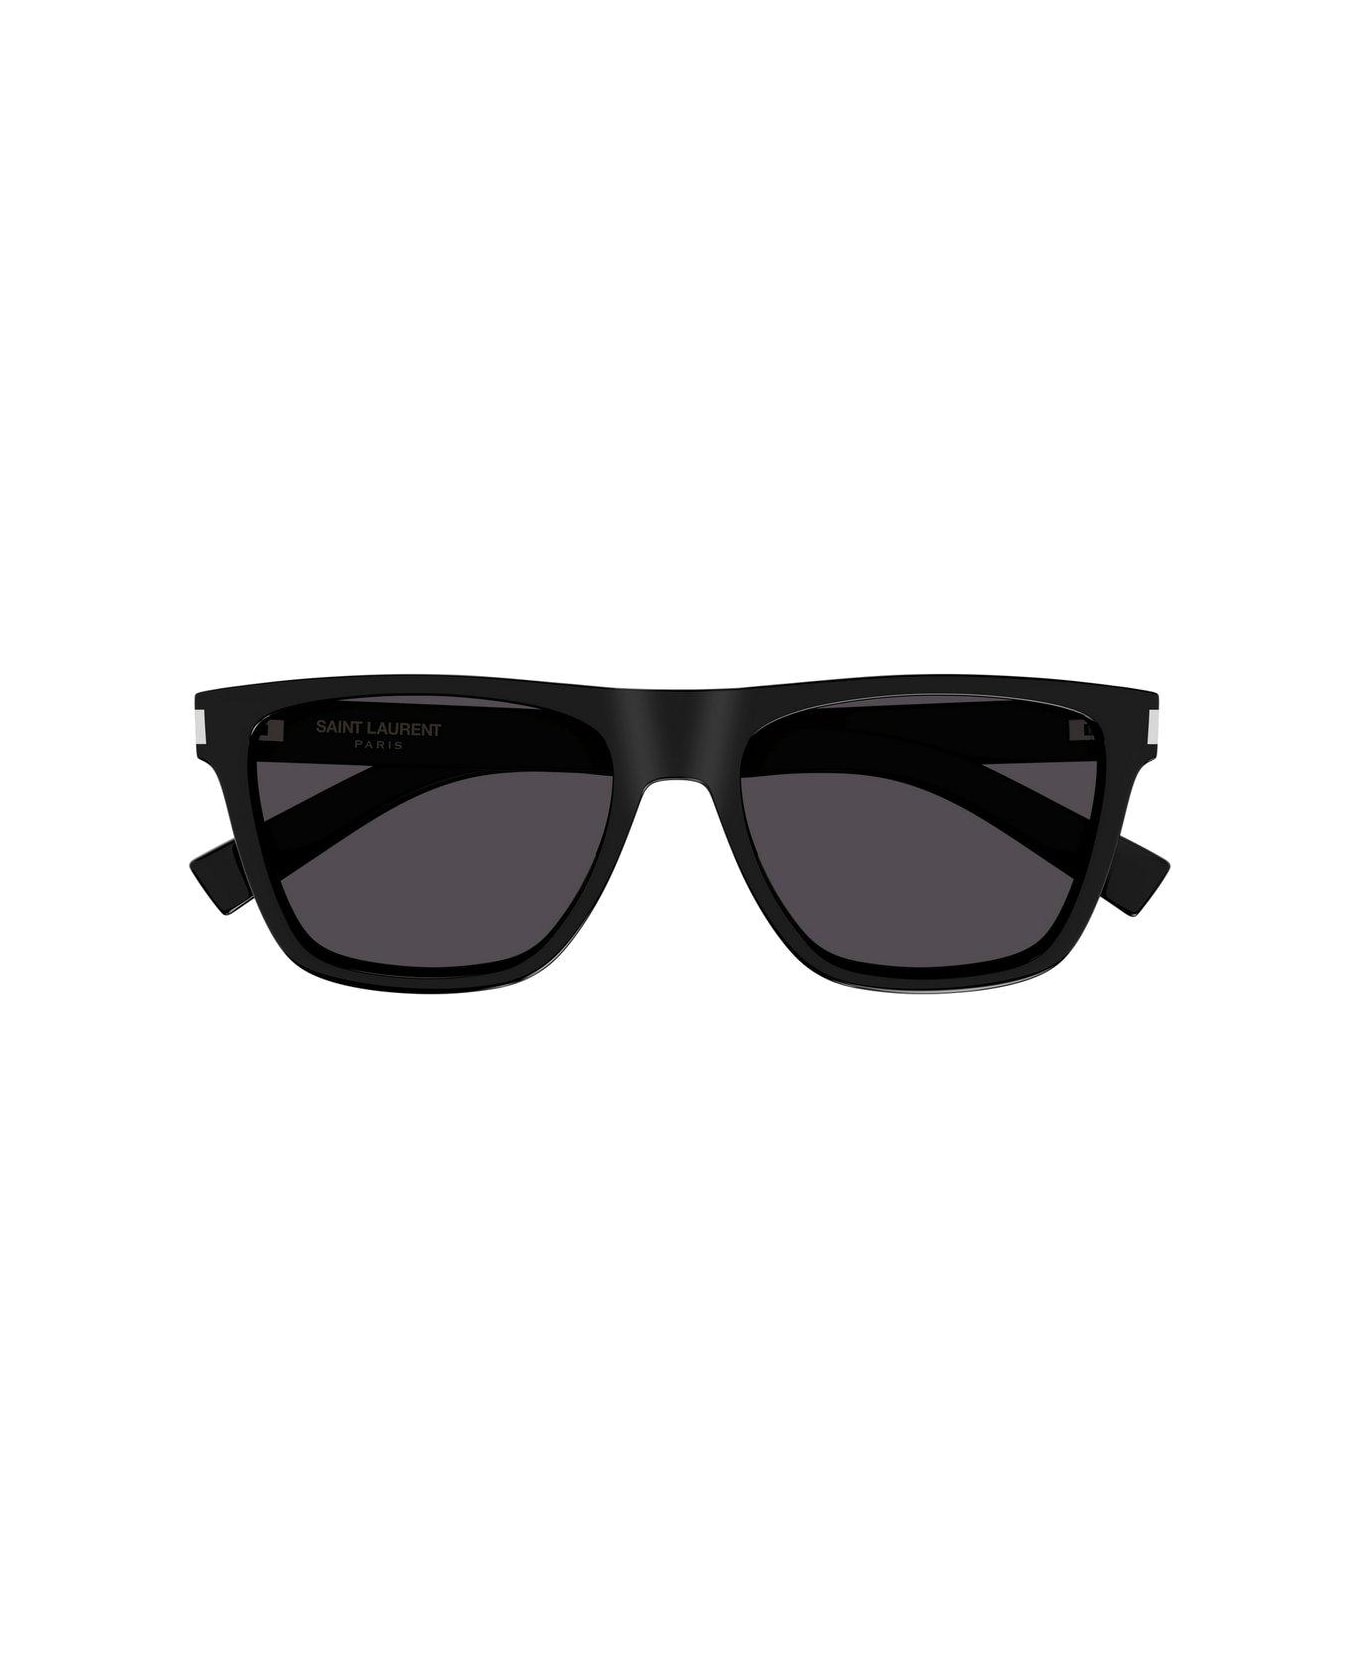 Saint Laurent Eyewear Square Frame Sunglasses Sunglasses - 001 BLACK CRYSTAL BLACK